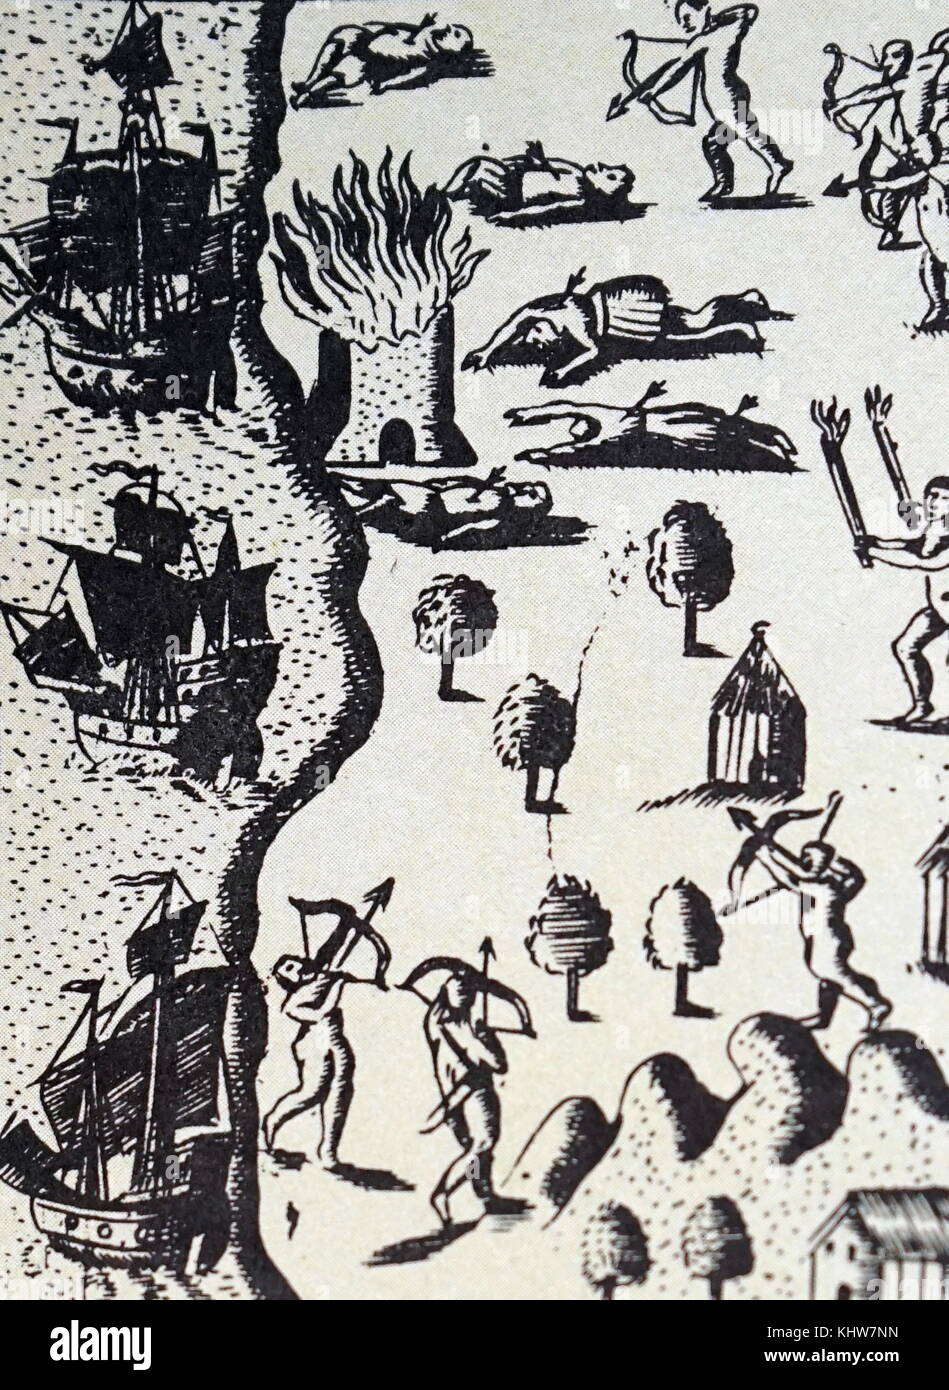 Ilustración representando a los españoles, abandonados por Cristóbal Colón, siendo asesinado por los indios, Navidad. Fecha del siglo XV. Foto de stock